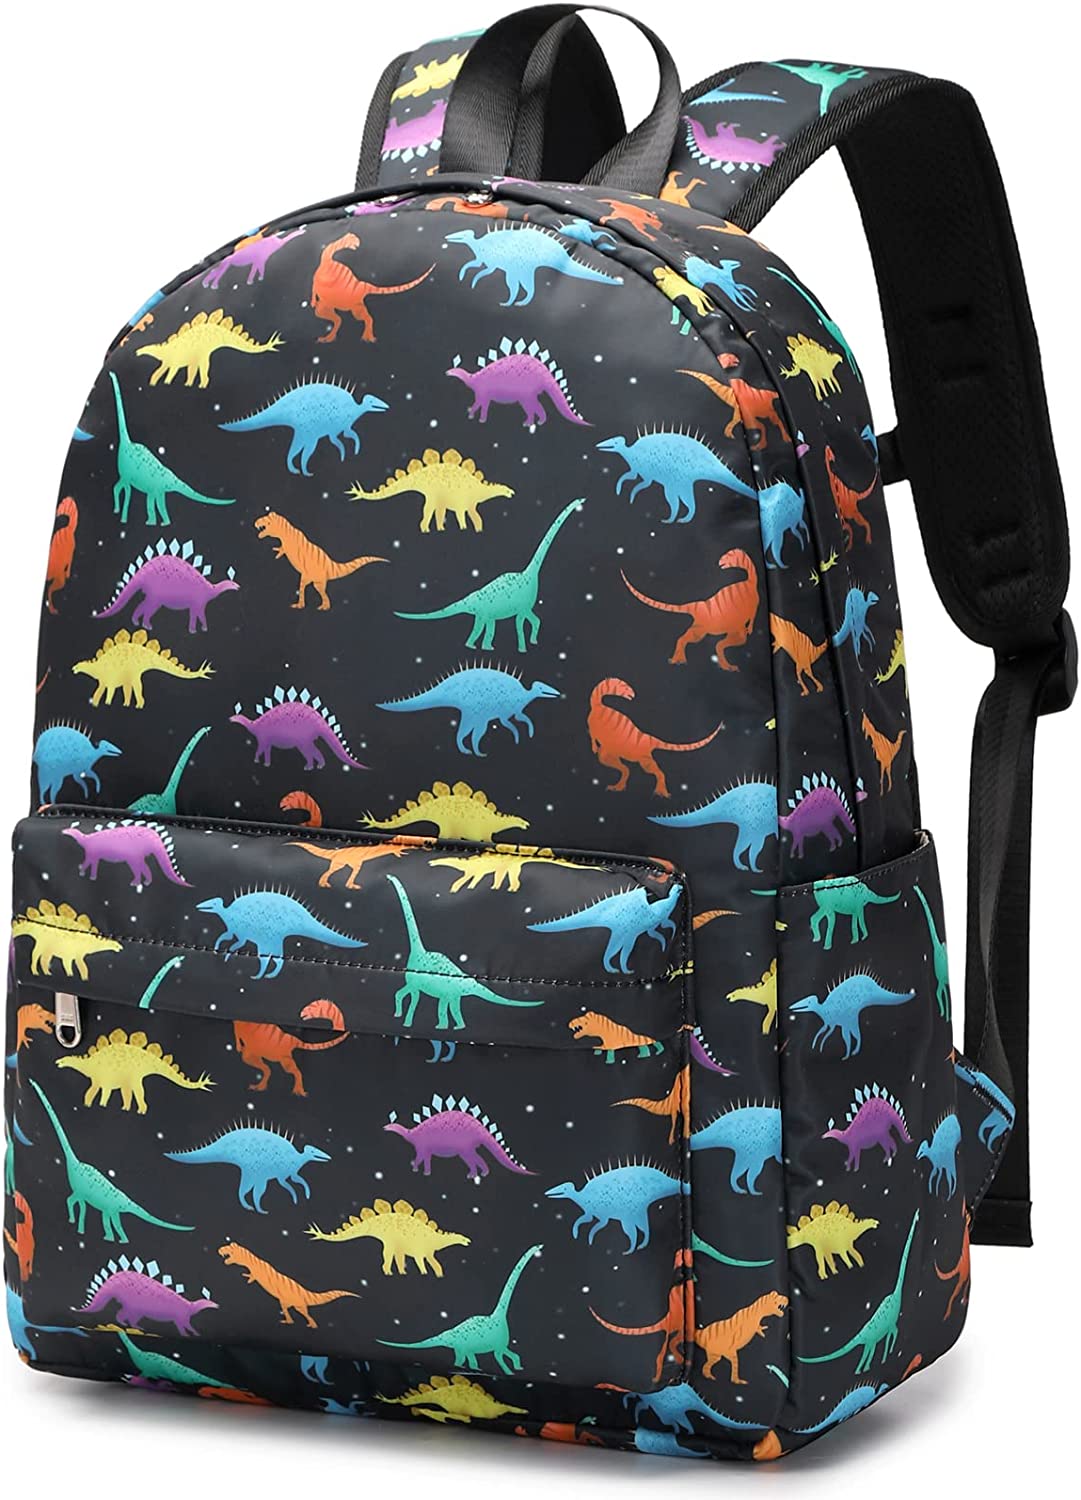 backpack amazon